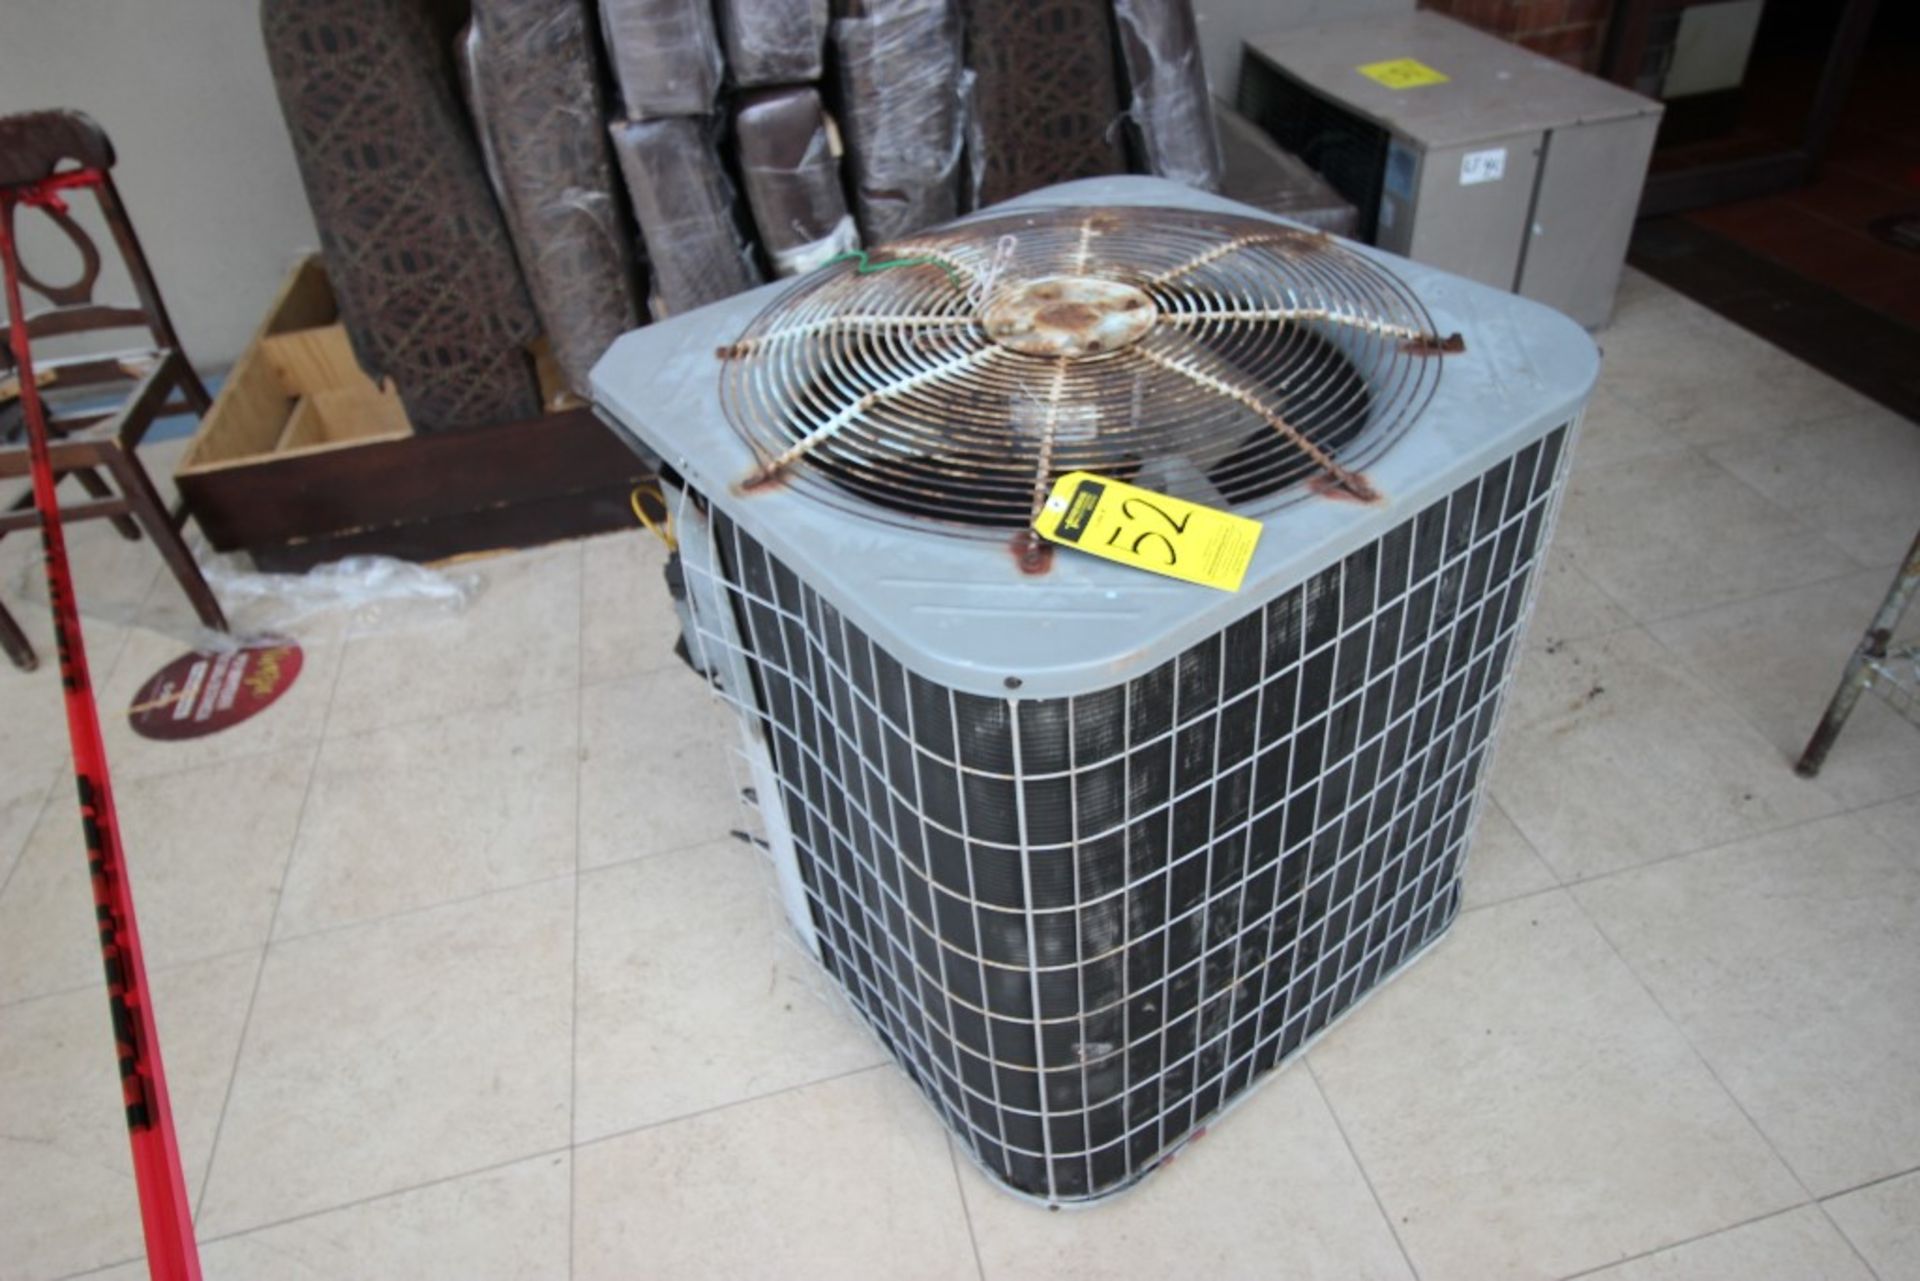 3 Unidades Condensadoras para aire acondicionado de un ventilador marca York, modelo:YCJD36S41S1A, - Image 2 of 19